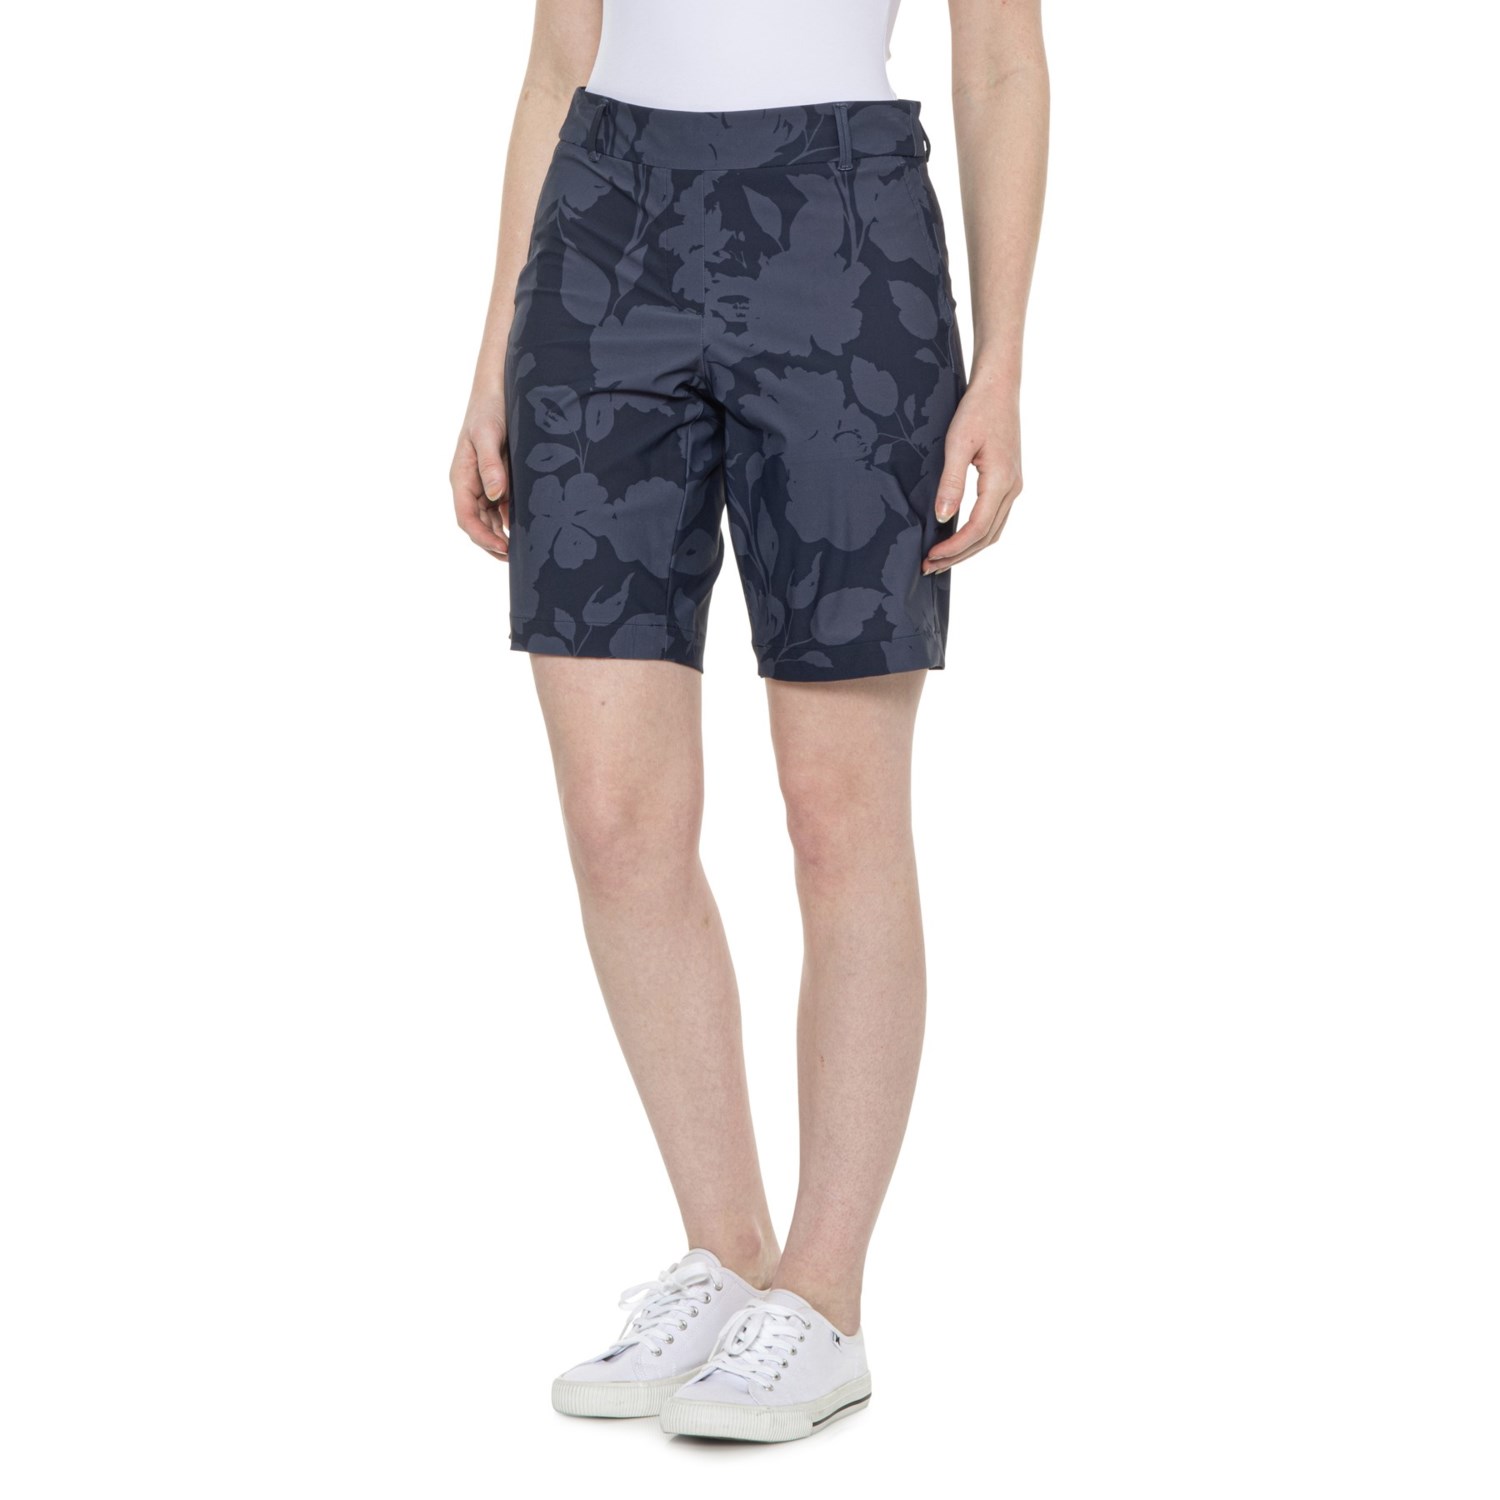 Spanx Sunshine Bermuda Shorts - 10”, UPF 50+ - Save 30%